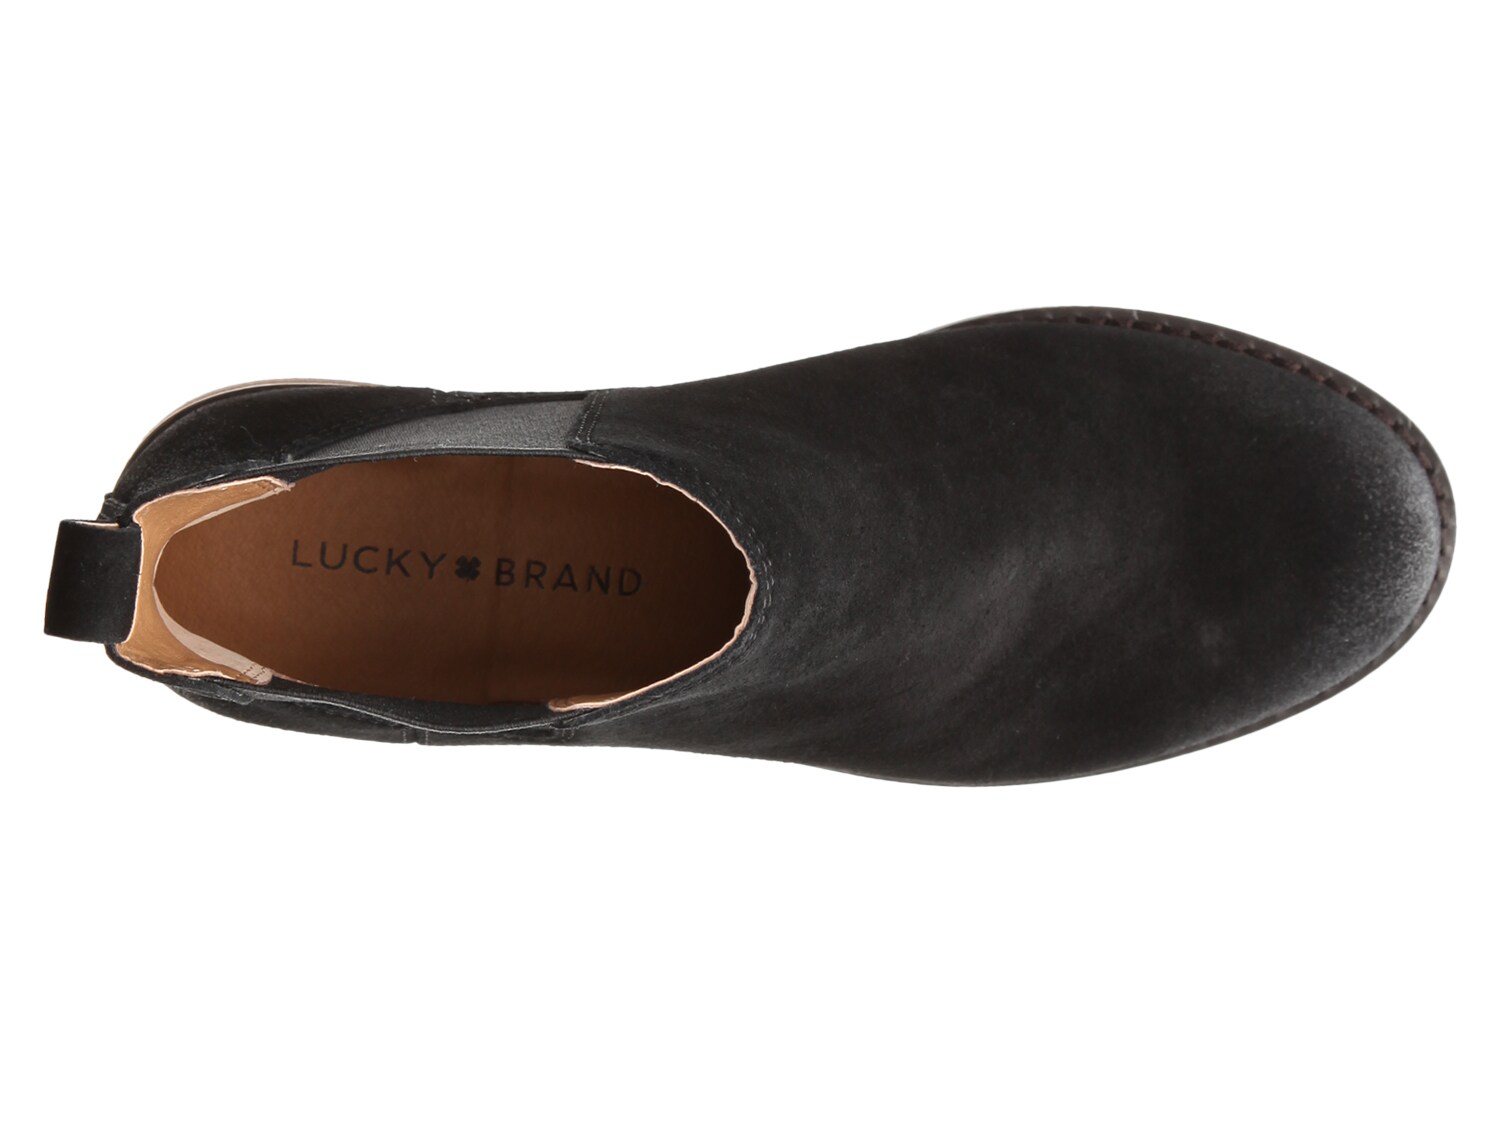 lucky brand noahh chelsea boot black